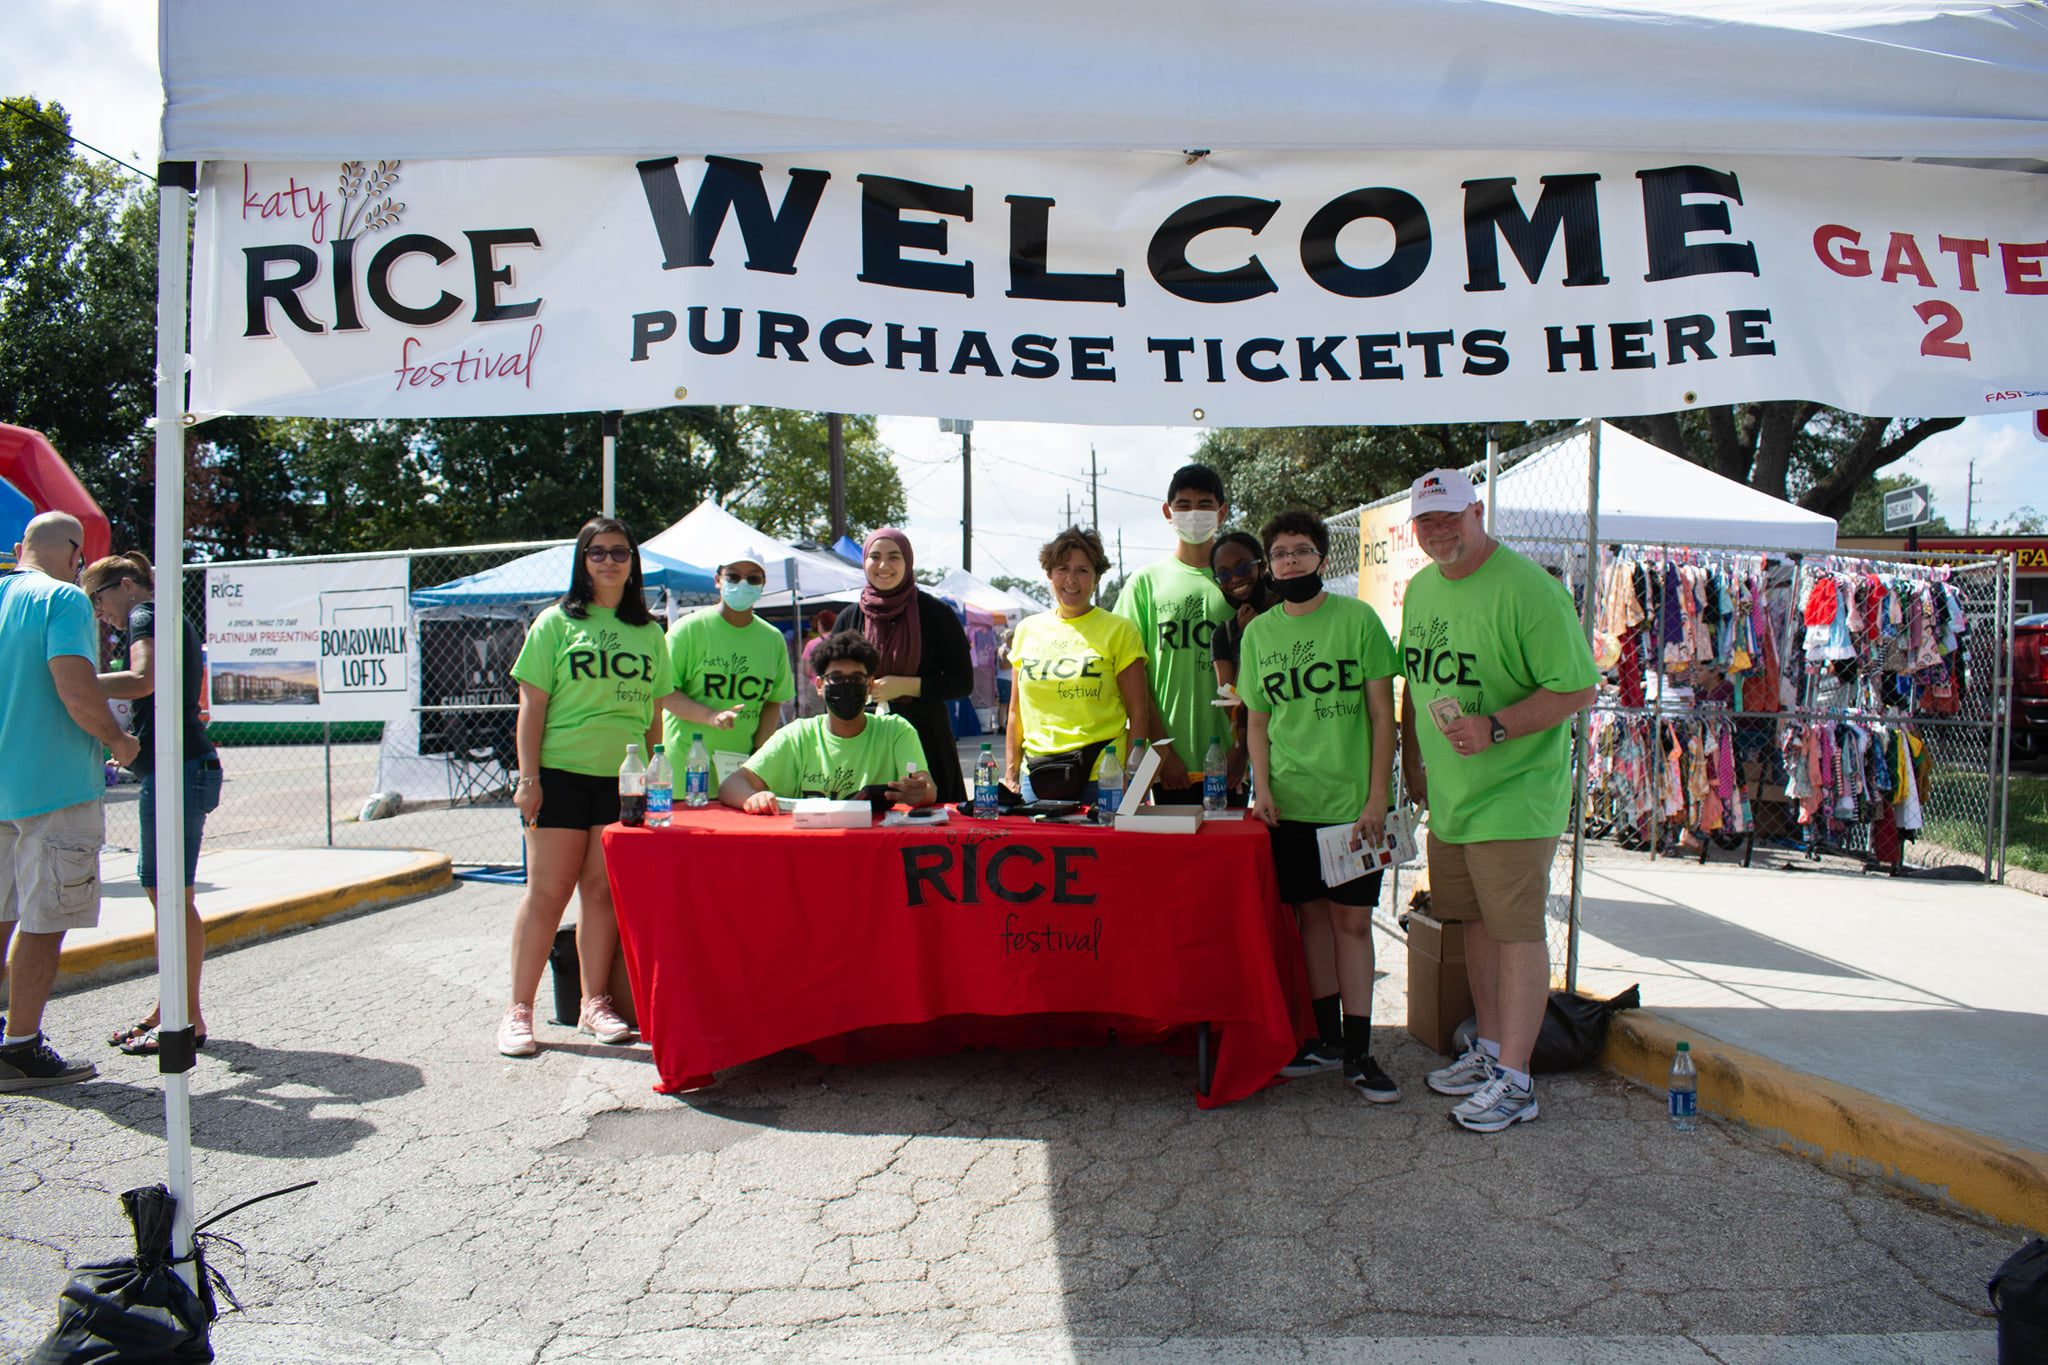 Katy Rice Festival Seeking Volunteers